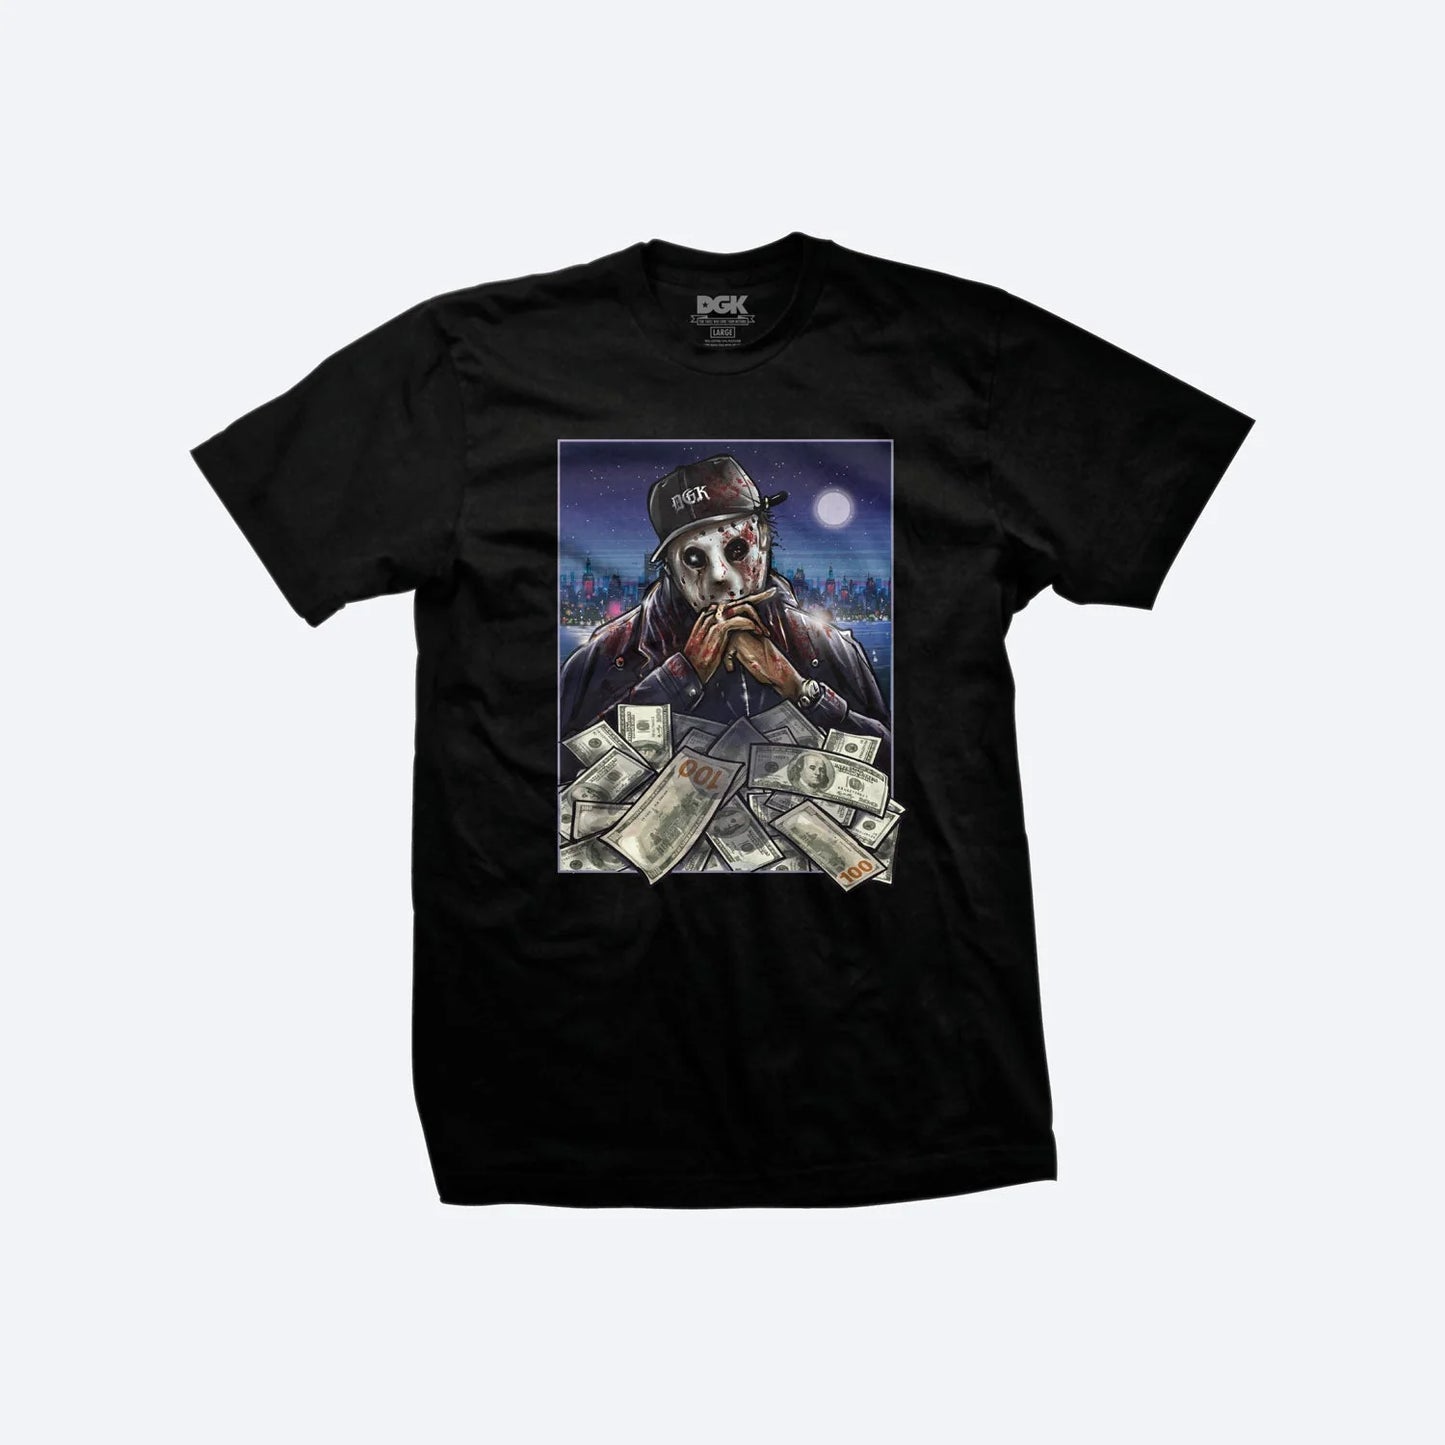 DGK Hood King Graphic T-Shirt